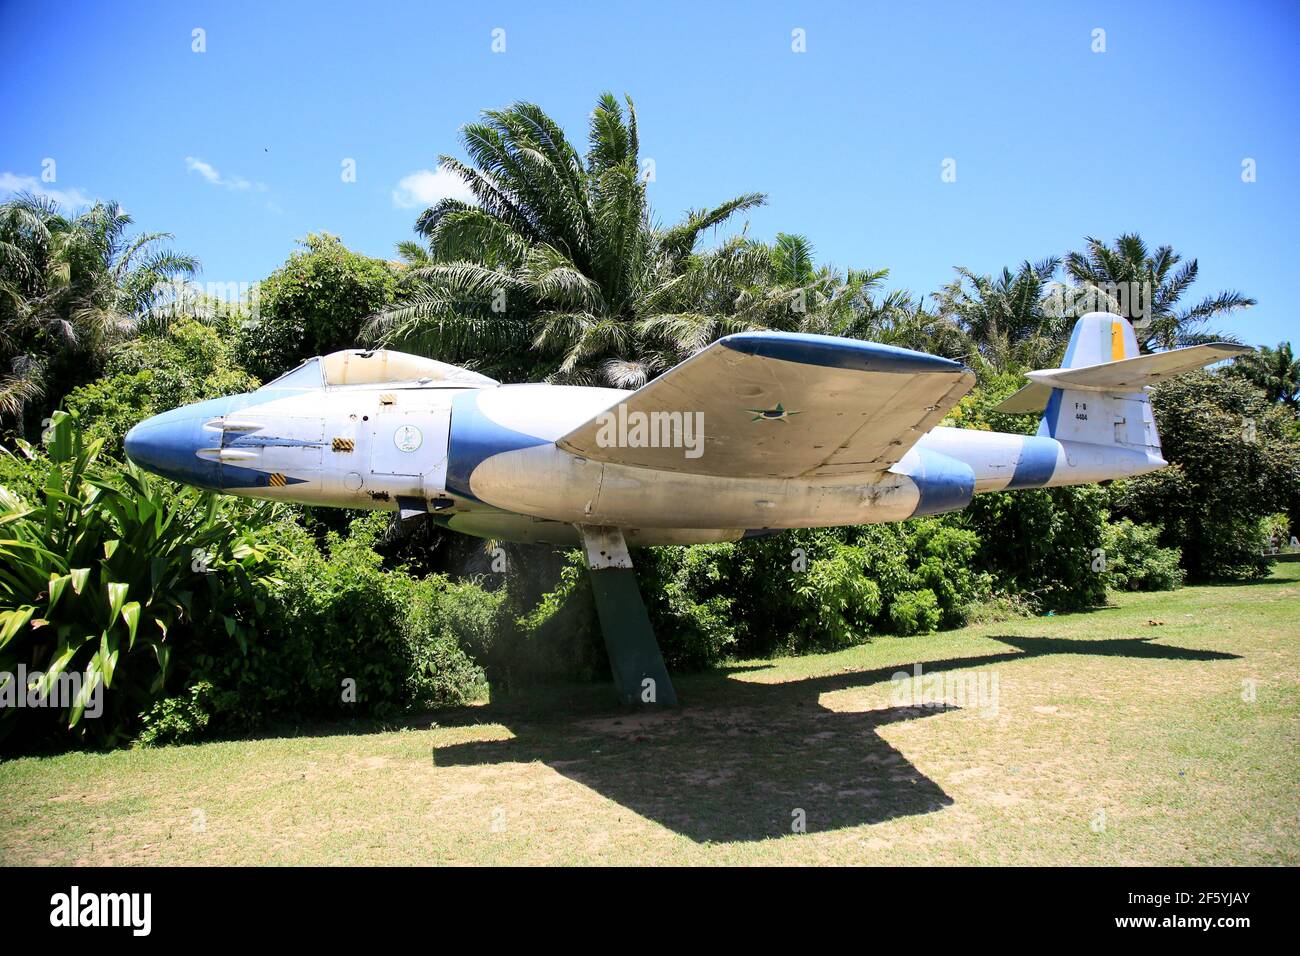 salvador, bahia, brasilien - 18. januar 2021: Gloster Meteor, ein britisch gemachtes Kampfflugzeug, das im zweiten Krieg eingesetzt wurde, ist auf der Salvador Air zu sehen Stockfoto